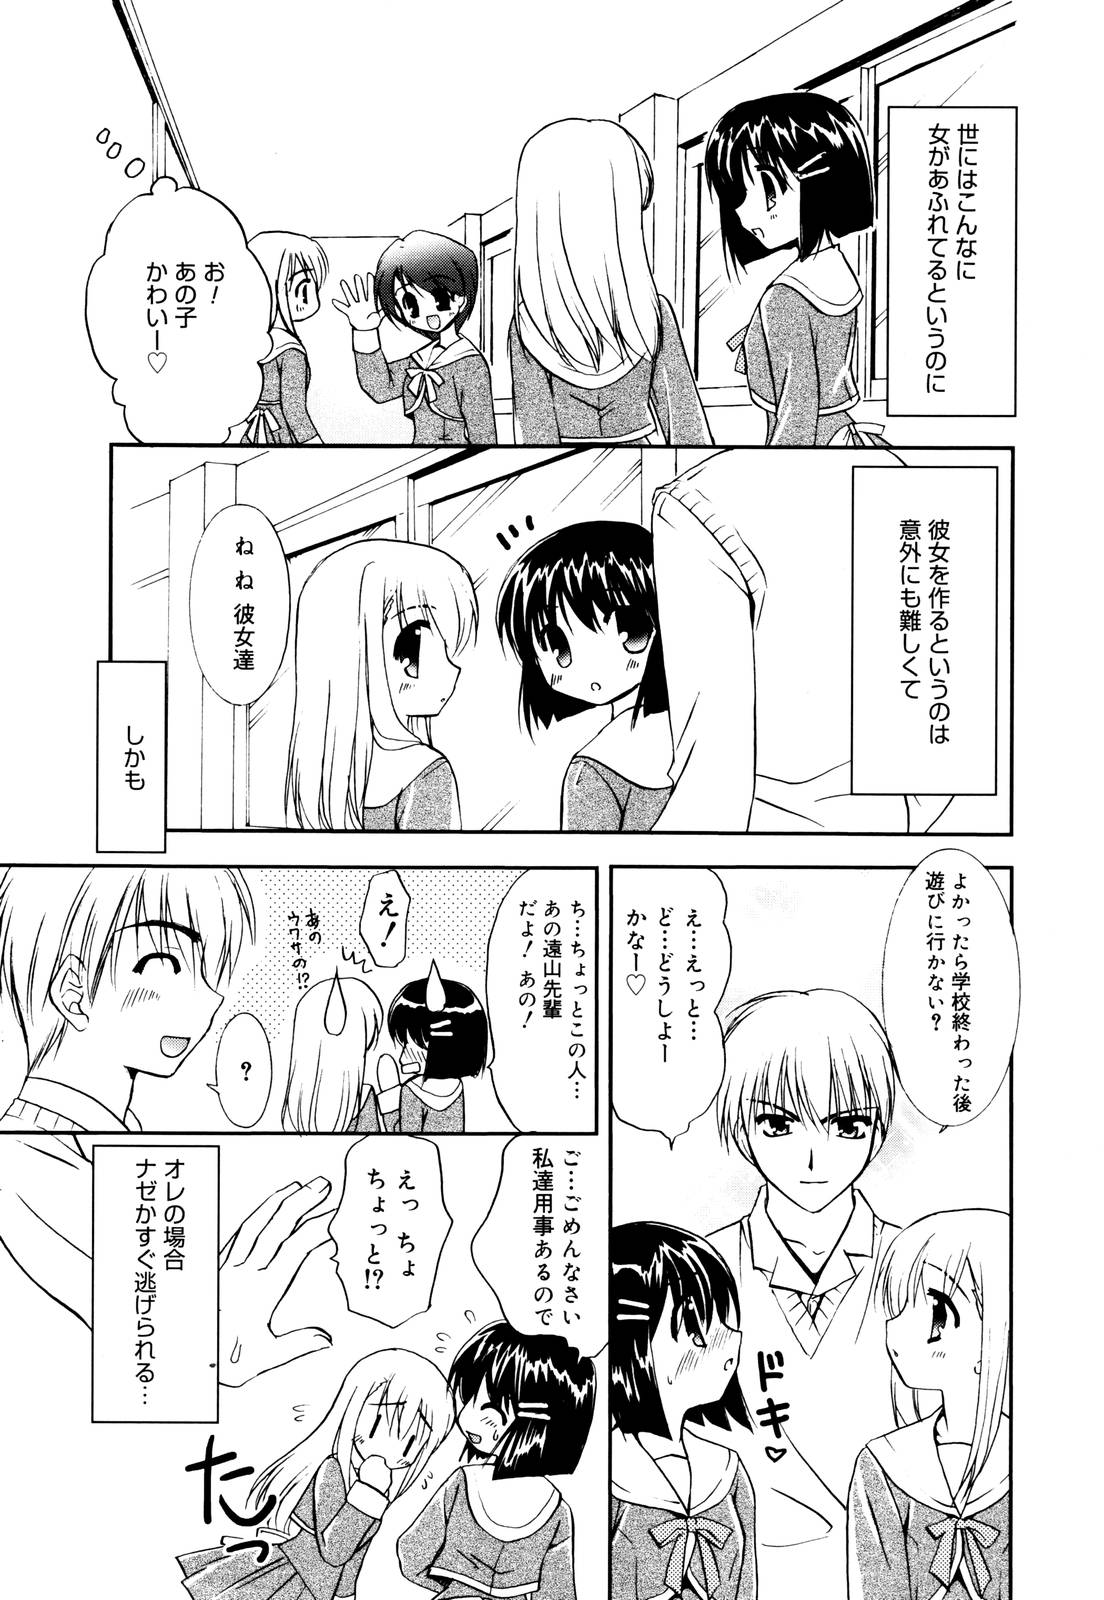 Manga Bangaichi 2006-01 page 23 full